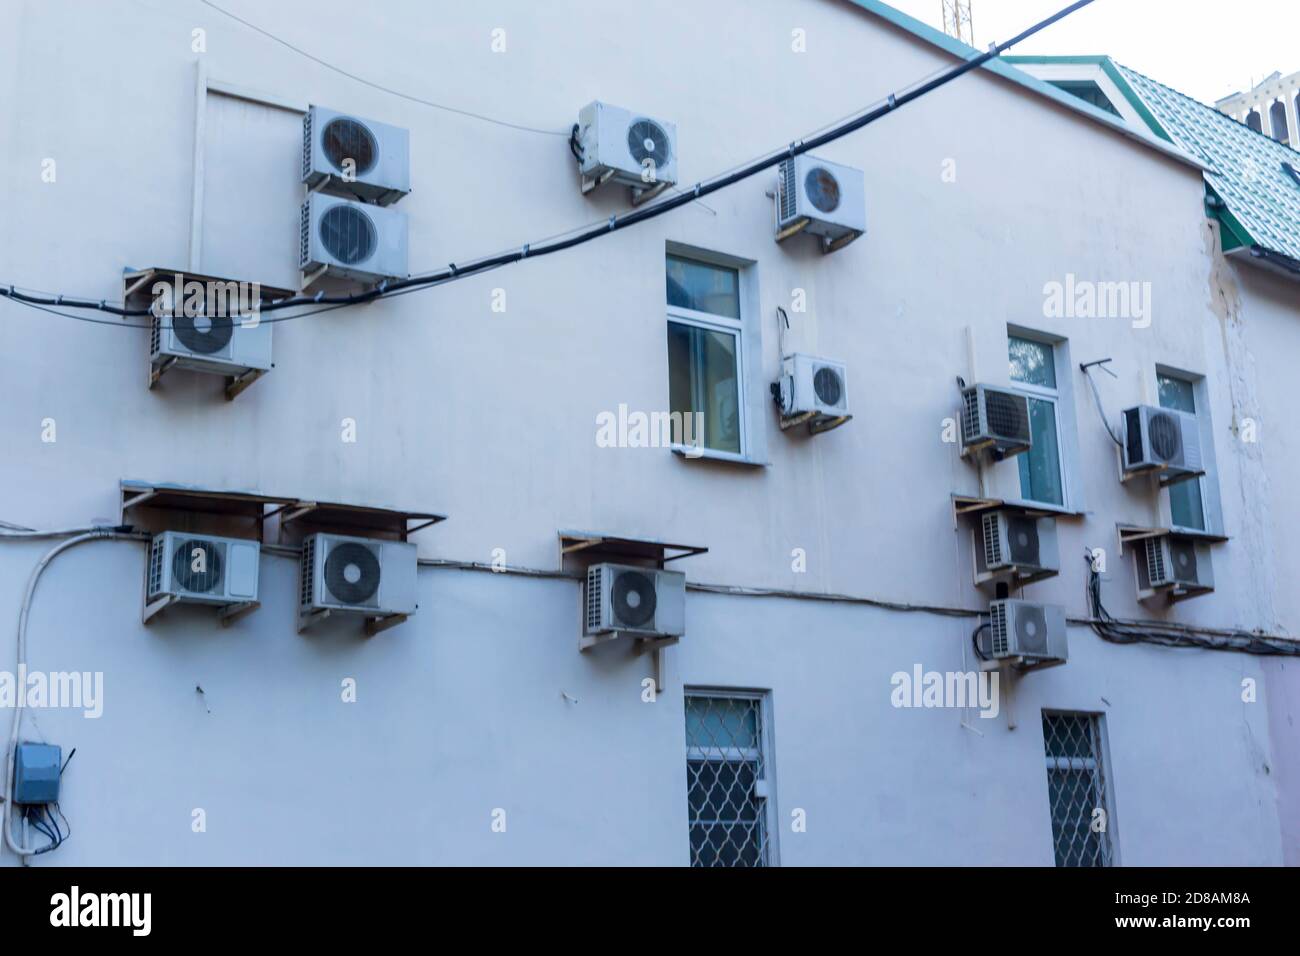 Condizionatori d'aria sul muro della casa in cui si trovano gli uffici. Casse di blocchi esterni di varie forme. Foto Stock